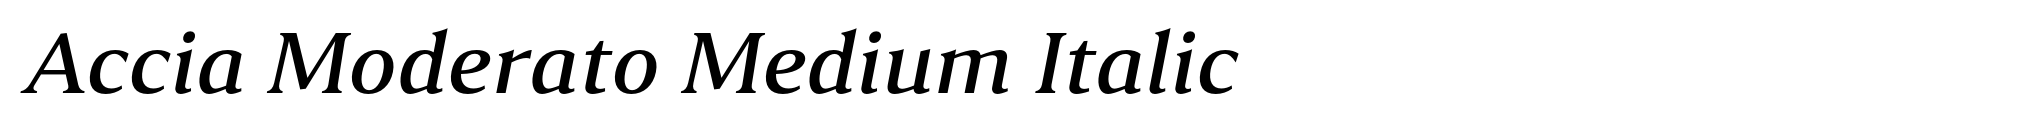 Accia Moderato Medium Italic image